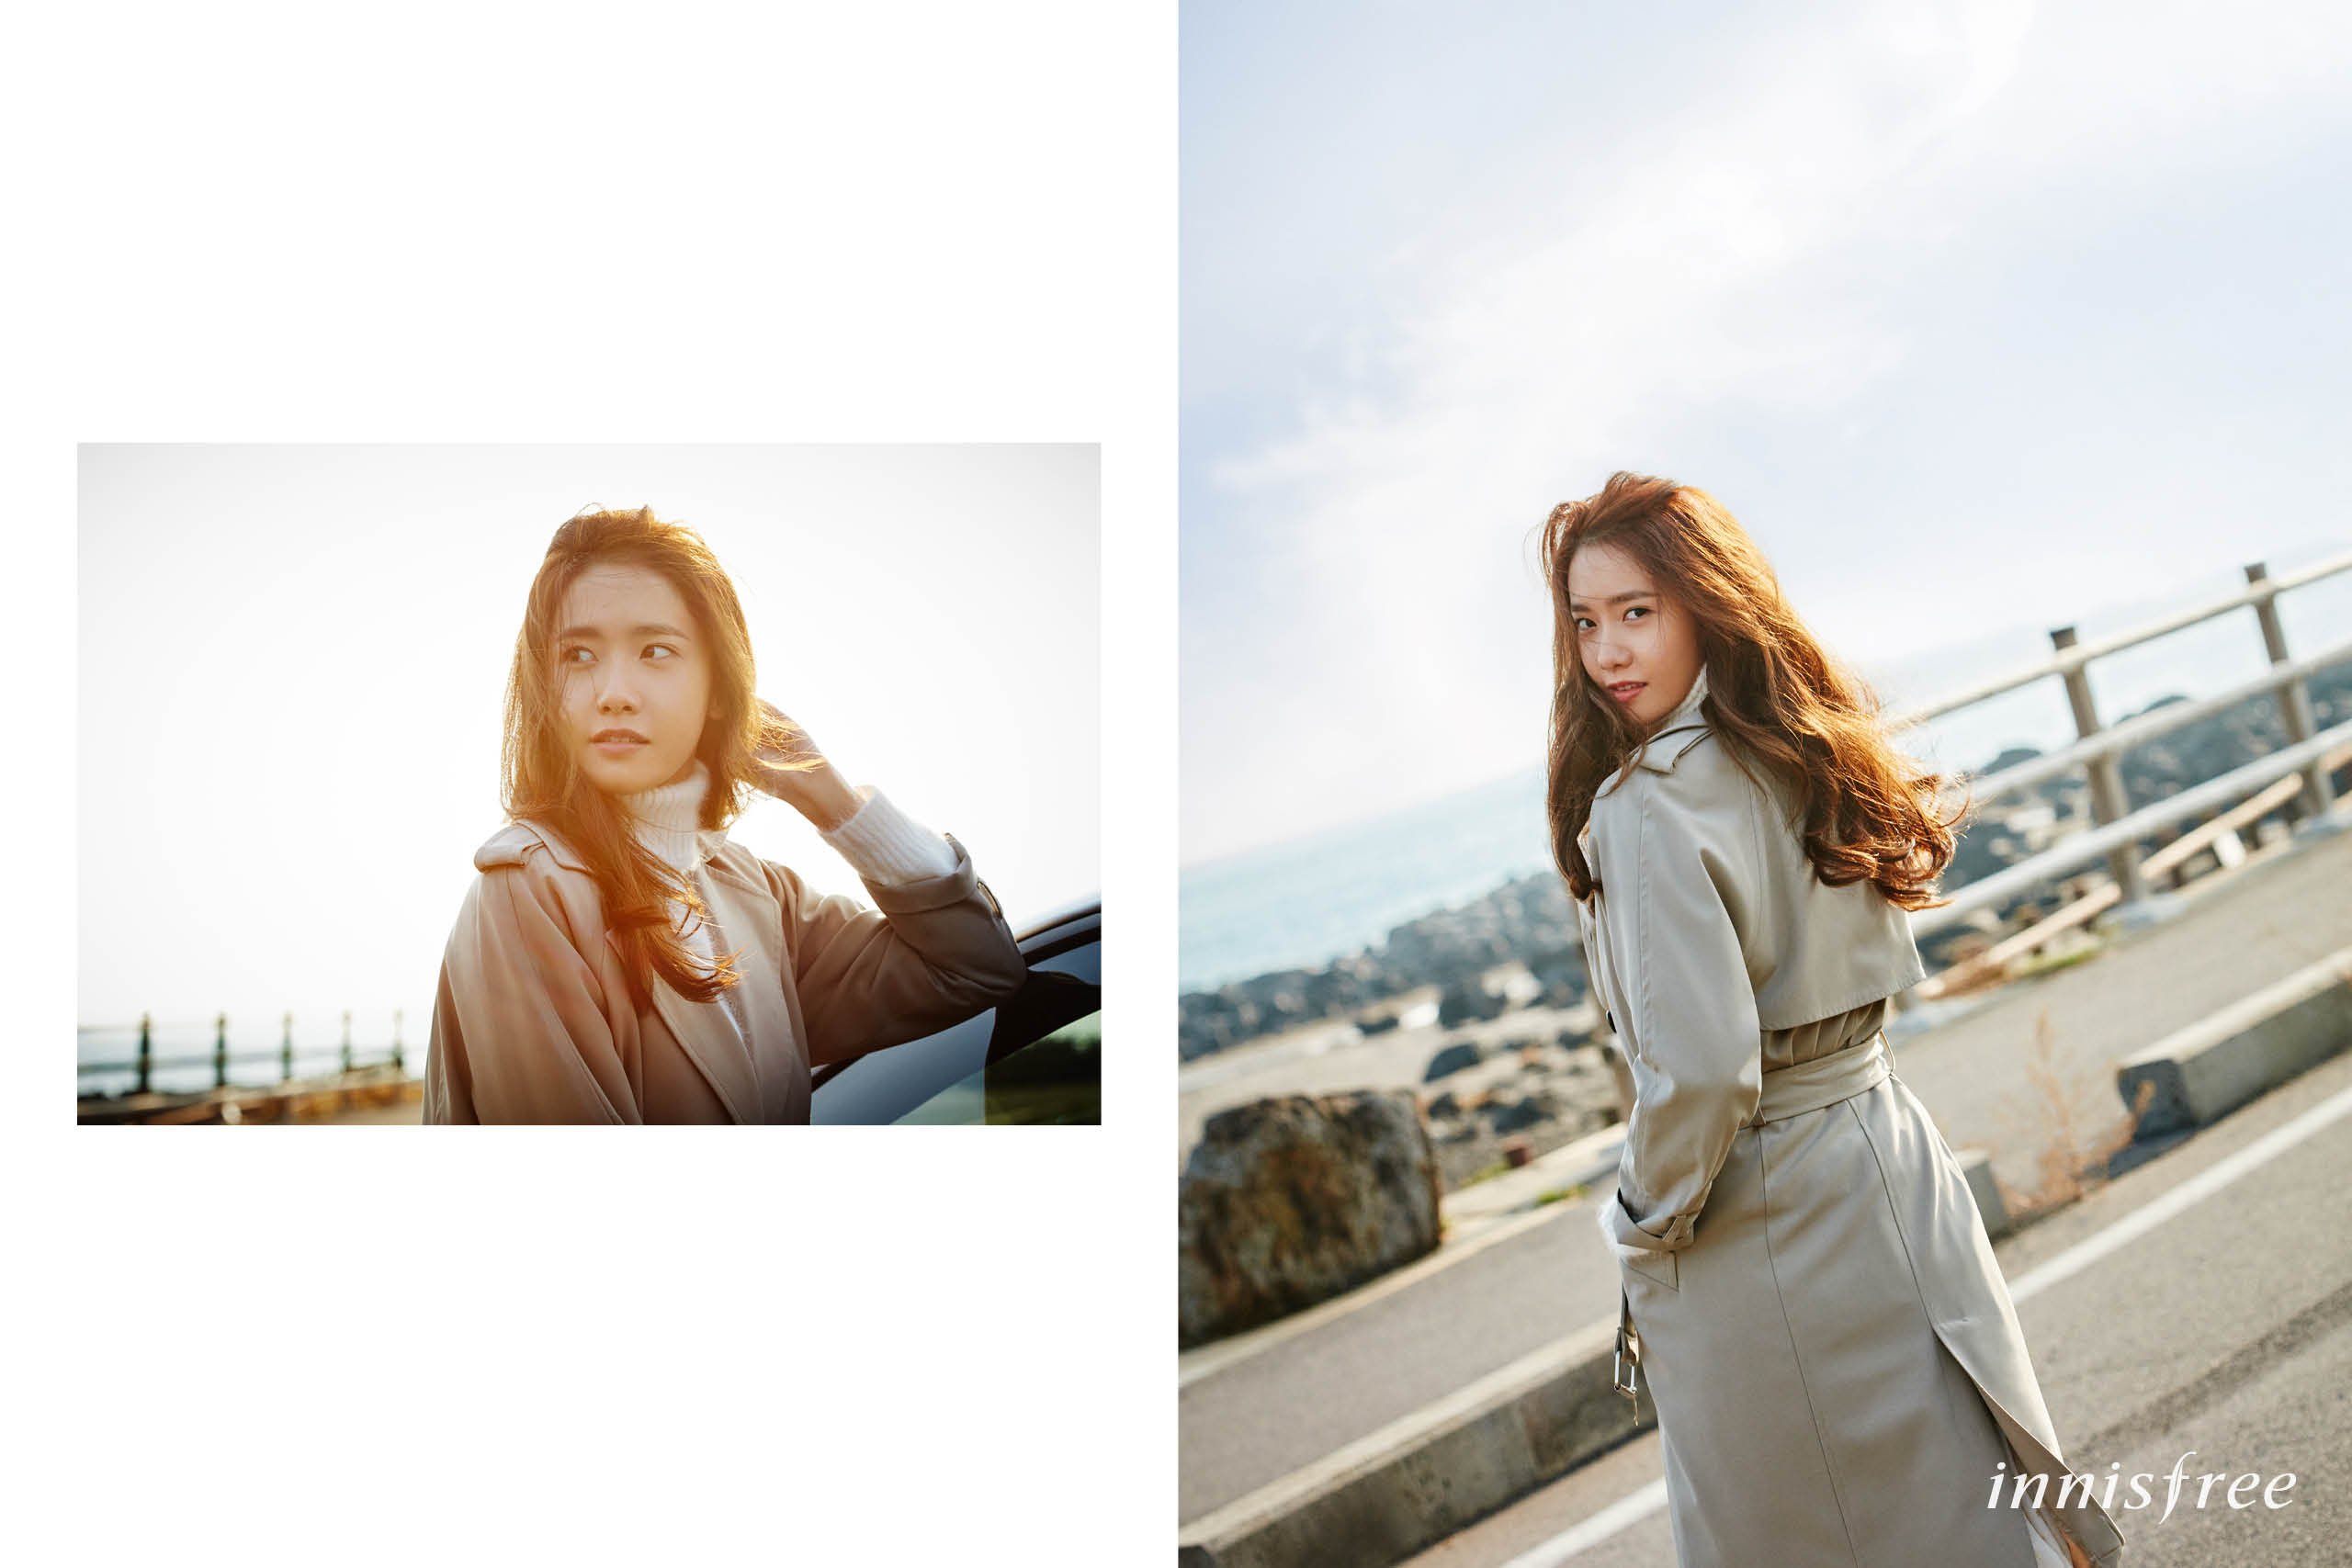 [OTHER][21-07-2012]Hình ảnh mới nhất từ thương hiệu "Innisfree" của YoonA - Page 14 RaZnEbYiI8-3000x3000